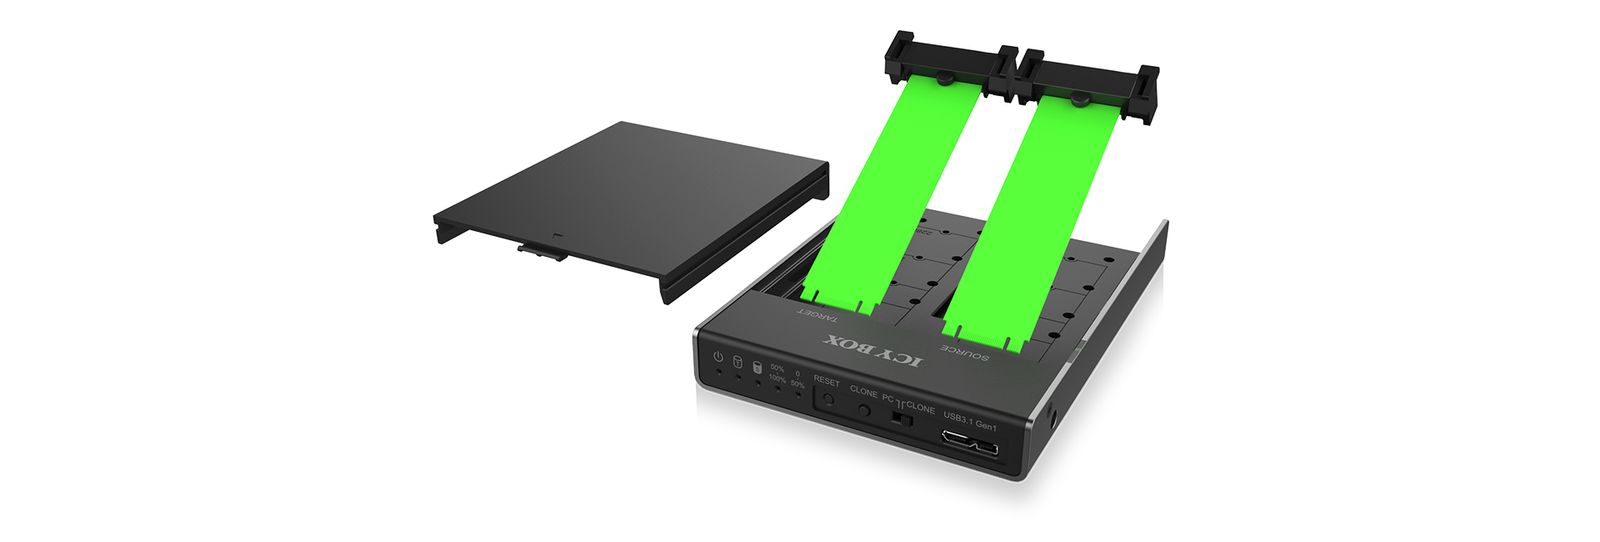 ICY BOX 60528 Box 2-fach m.2 Dockingstation mit Klonfunktion für m.2 SATA SSD, USB 3.0, B-Key, B+M-Key